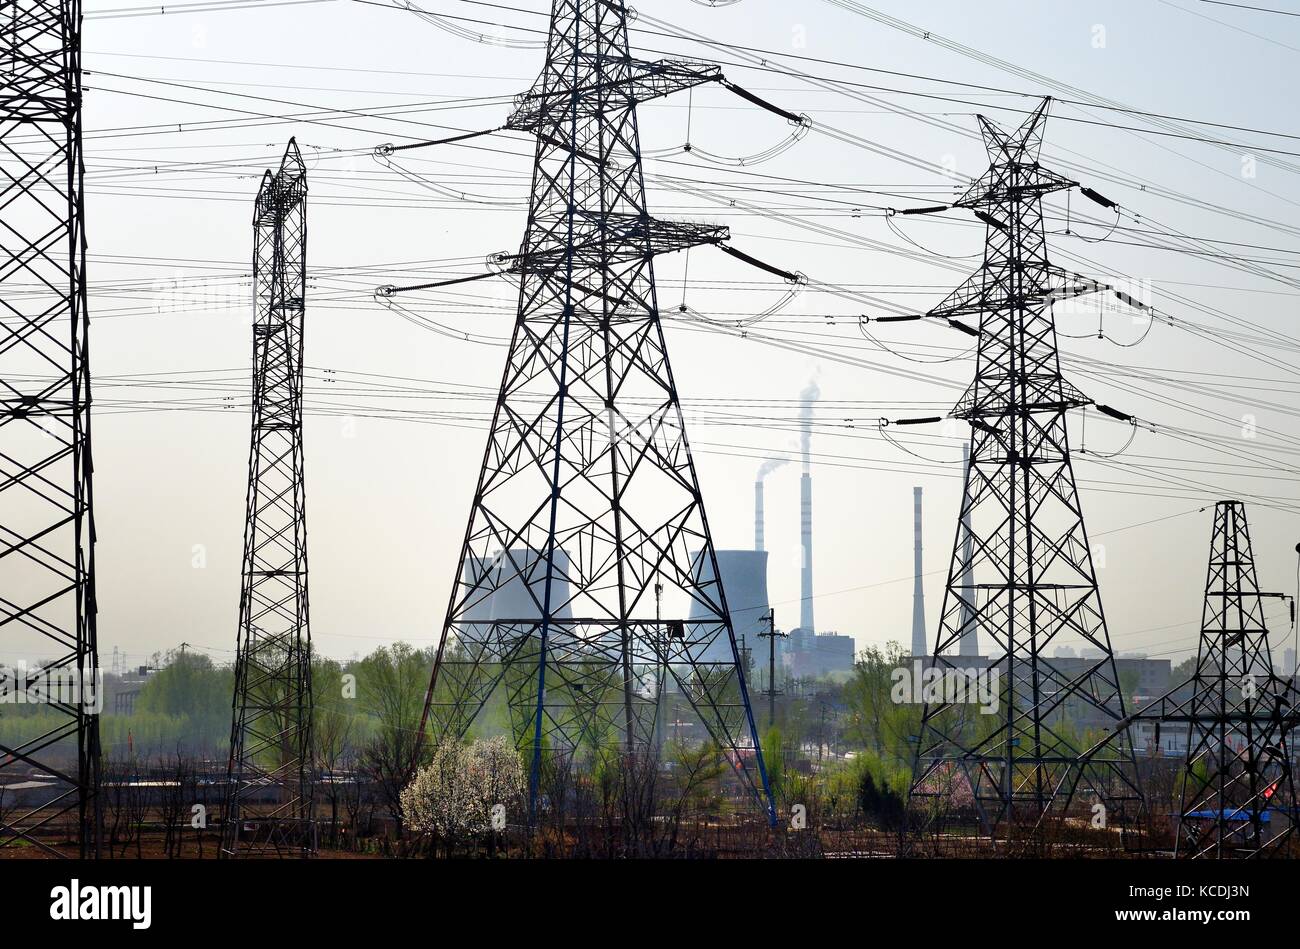 Chinesische Kohle Strom erzeugen Power Station auf der Nordseite der Stadt Taiyuan, China. Kühltürme und Raster Pylonen Stockfoto